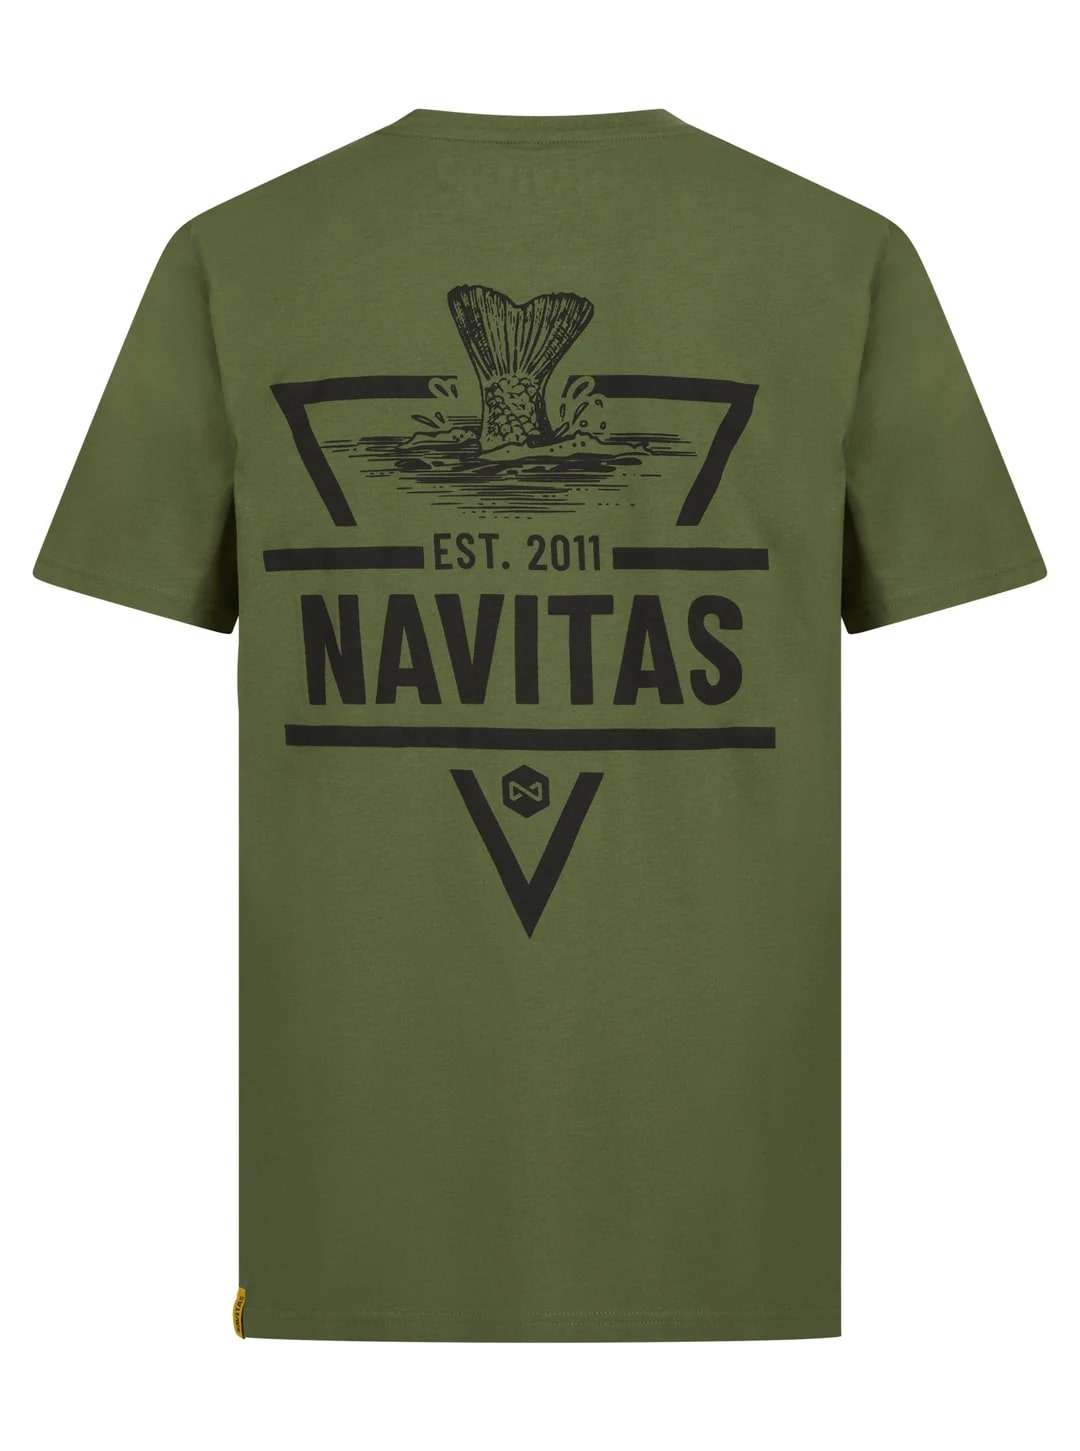 Navitas Diving T Shirt